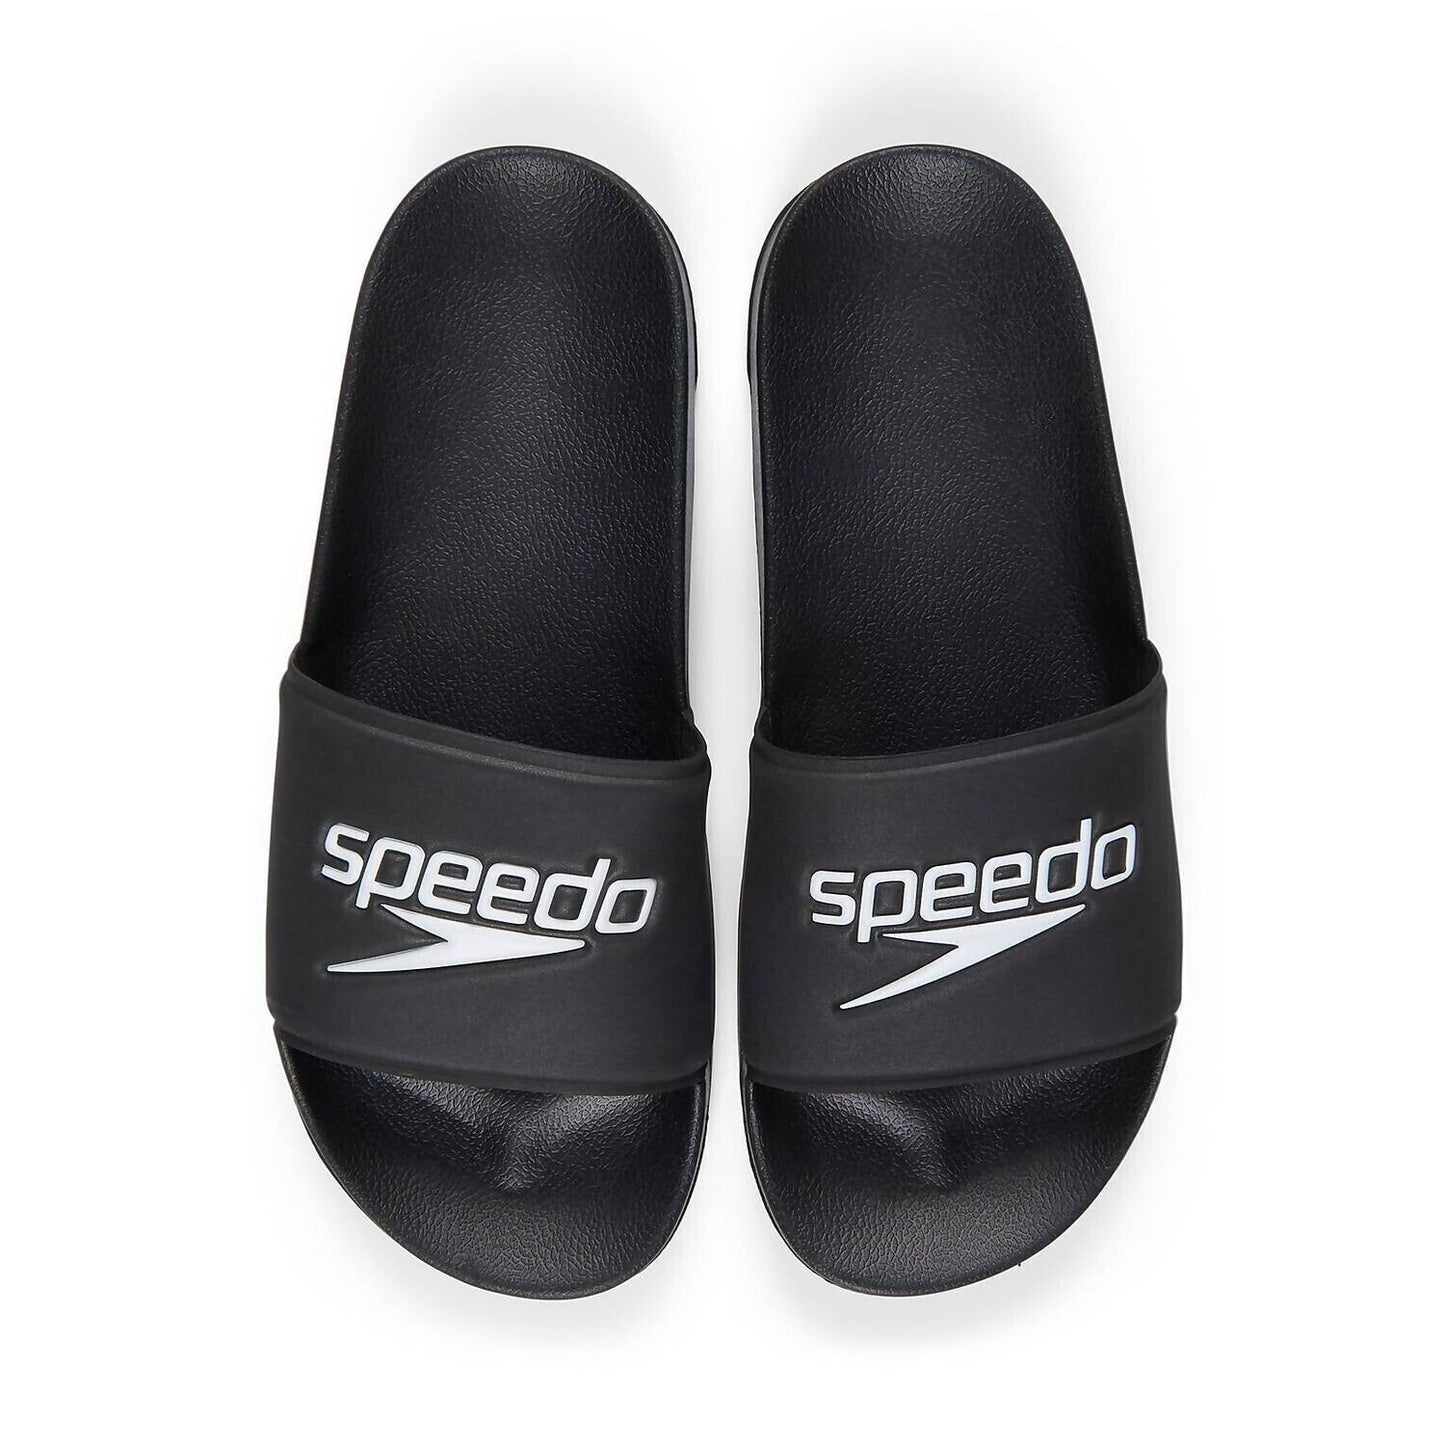 Speedo Black Unisex Deck Slide Size 14